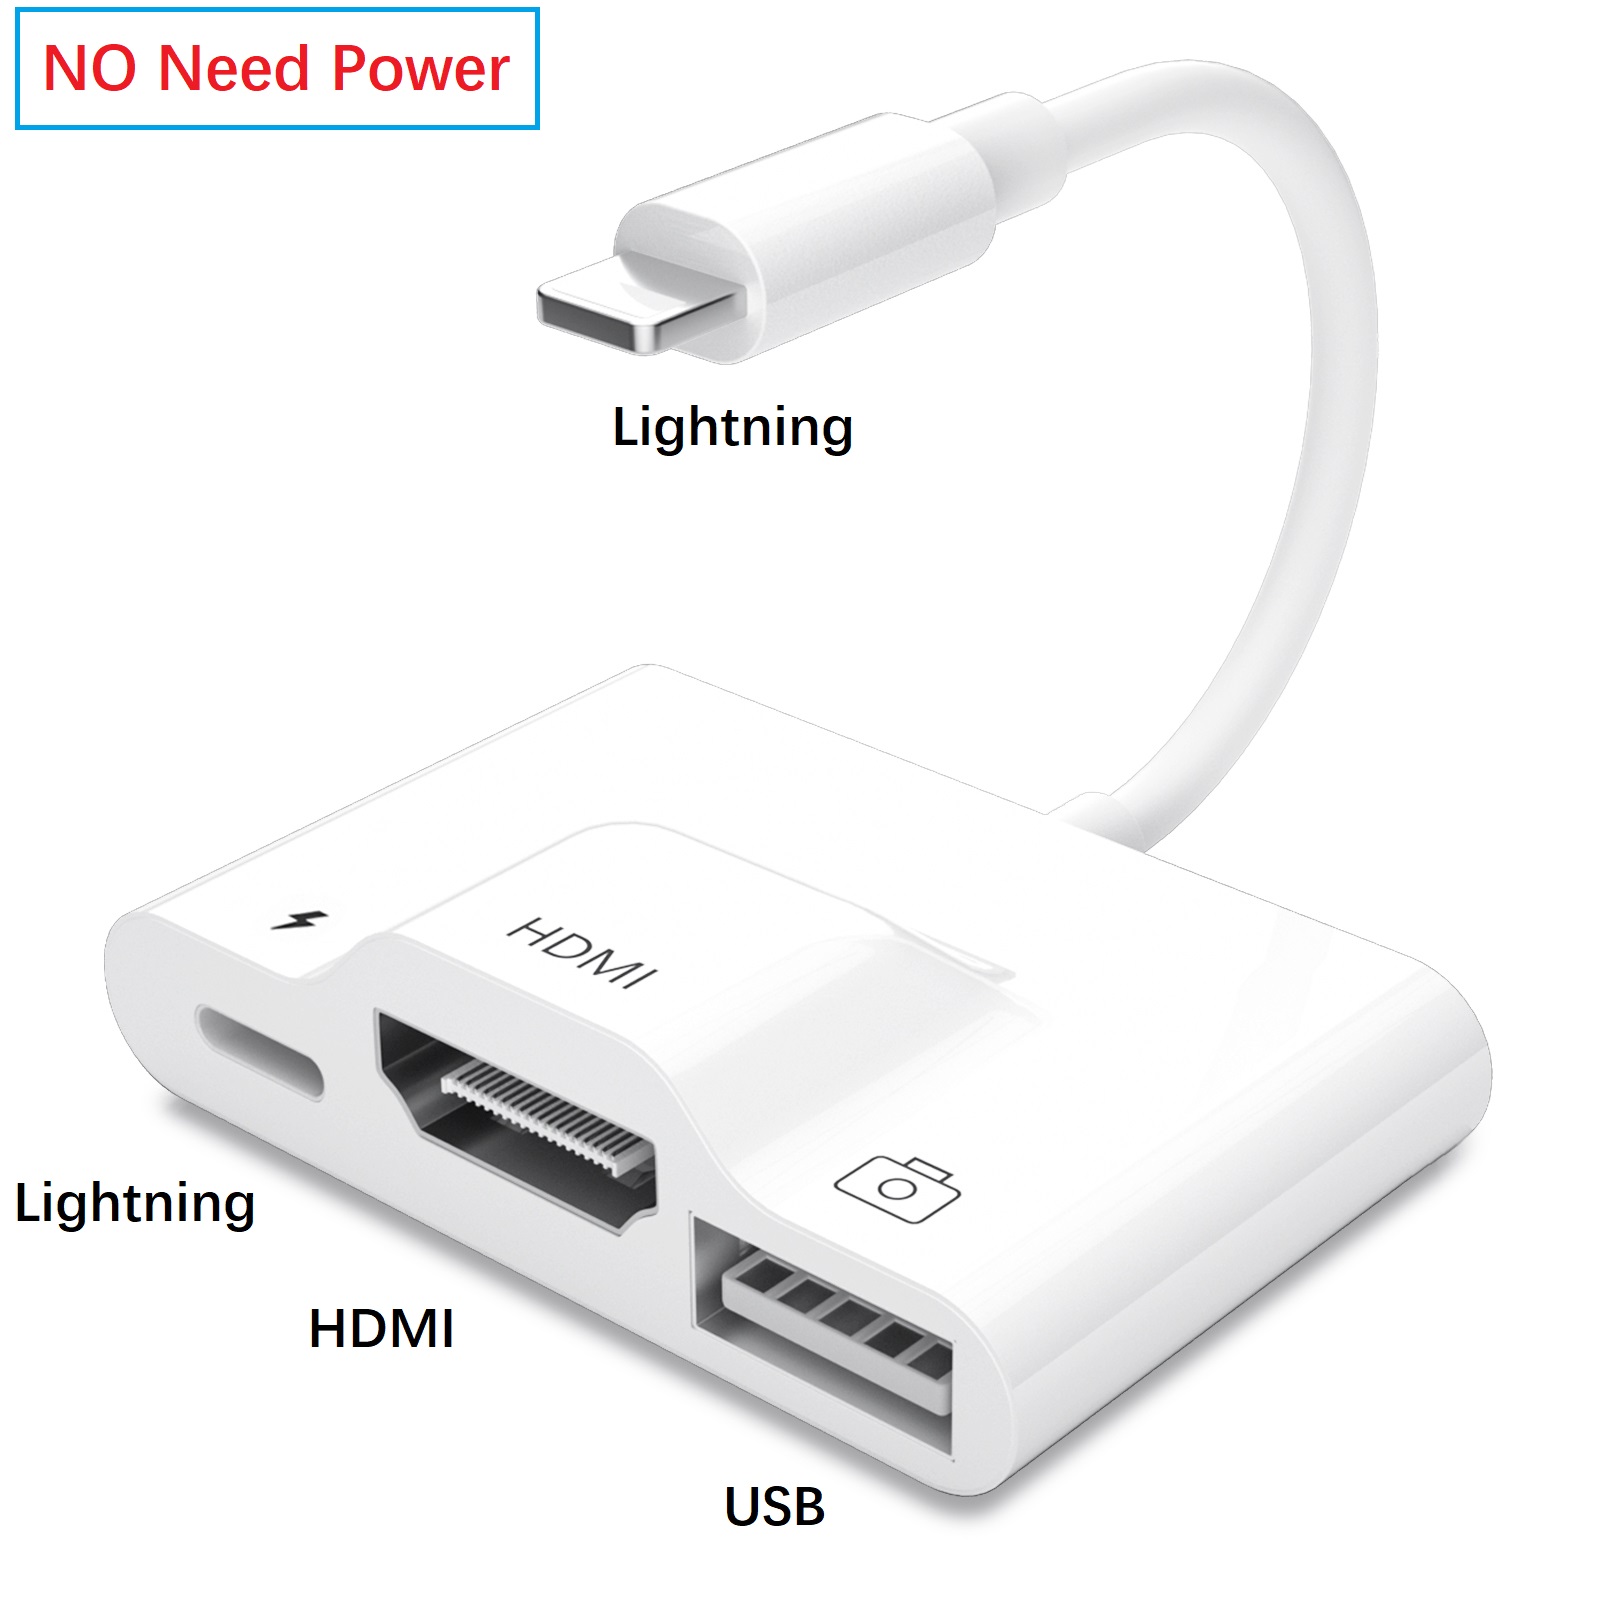 US$ 19.99 - Meenova Lightning to HDMI Digital AV Adapter, [No Need Power],  3 in 1 Lightning Hub, 1080P HDMI Sync Screen Digital Audio AV Converter  with USB & Charging Port for